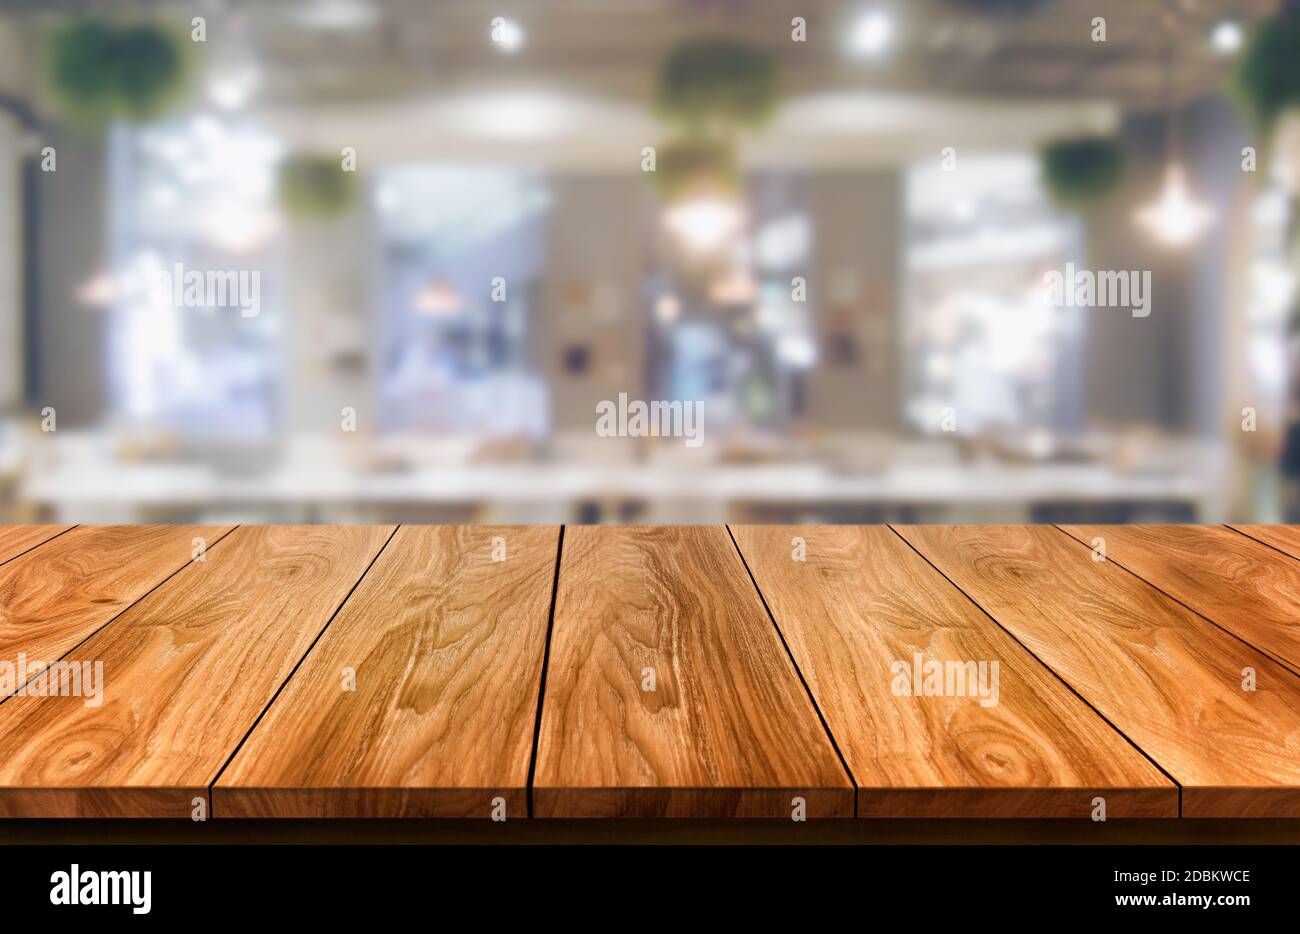 Bàn gỗ trong không gian nhà hàng hiện đại sẽ giúp khách hàng cảm nhận được vẻ đẹp thanh lịch và sang trọng của không gian. Với chất liệu gỗ tuyệt đẹp, bàn ở những khu vực đặc biệt trông sẽ toát lên một vẻ đẹp đầy thu hút và tinh tế.